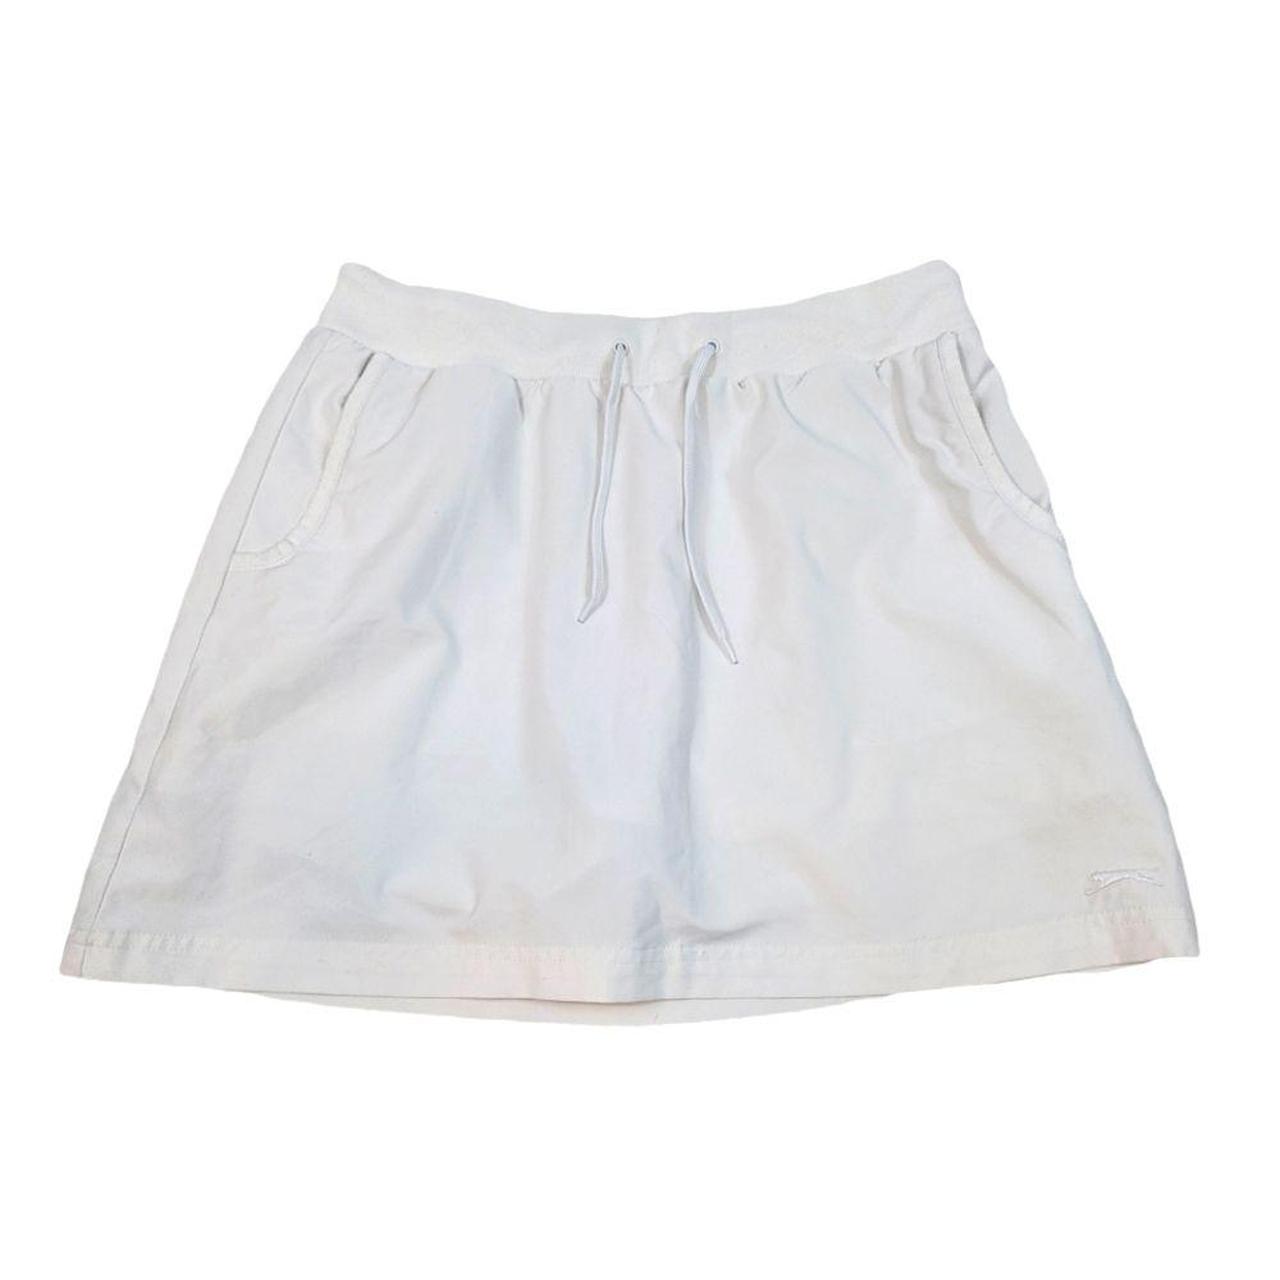 Product Image 1 - Slazenger White Tennis Skirt/Skort

Size Medium